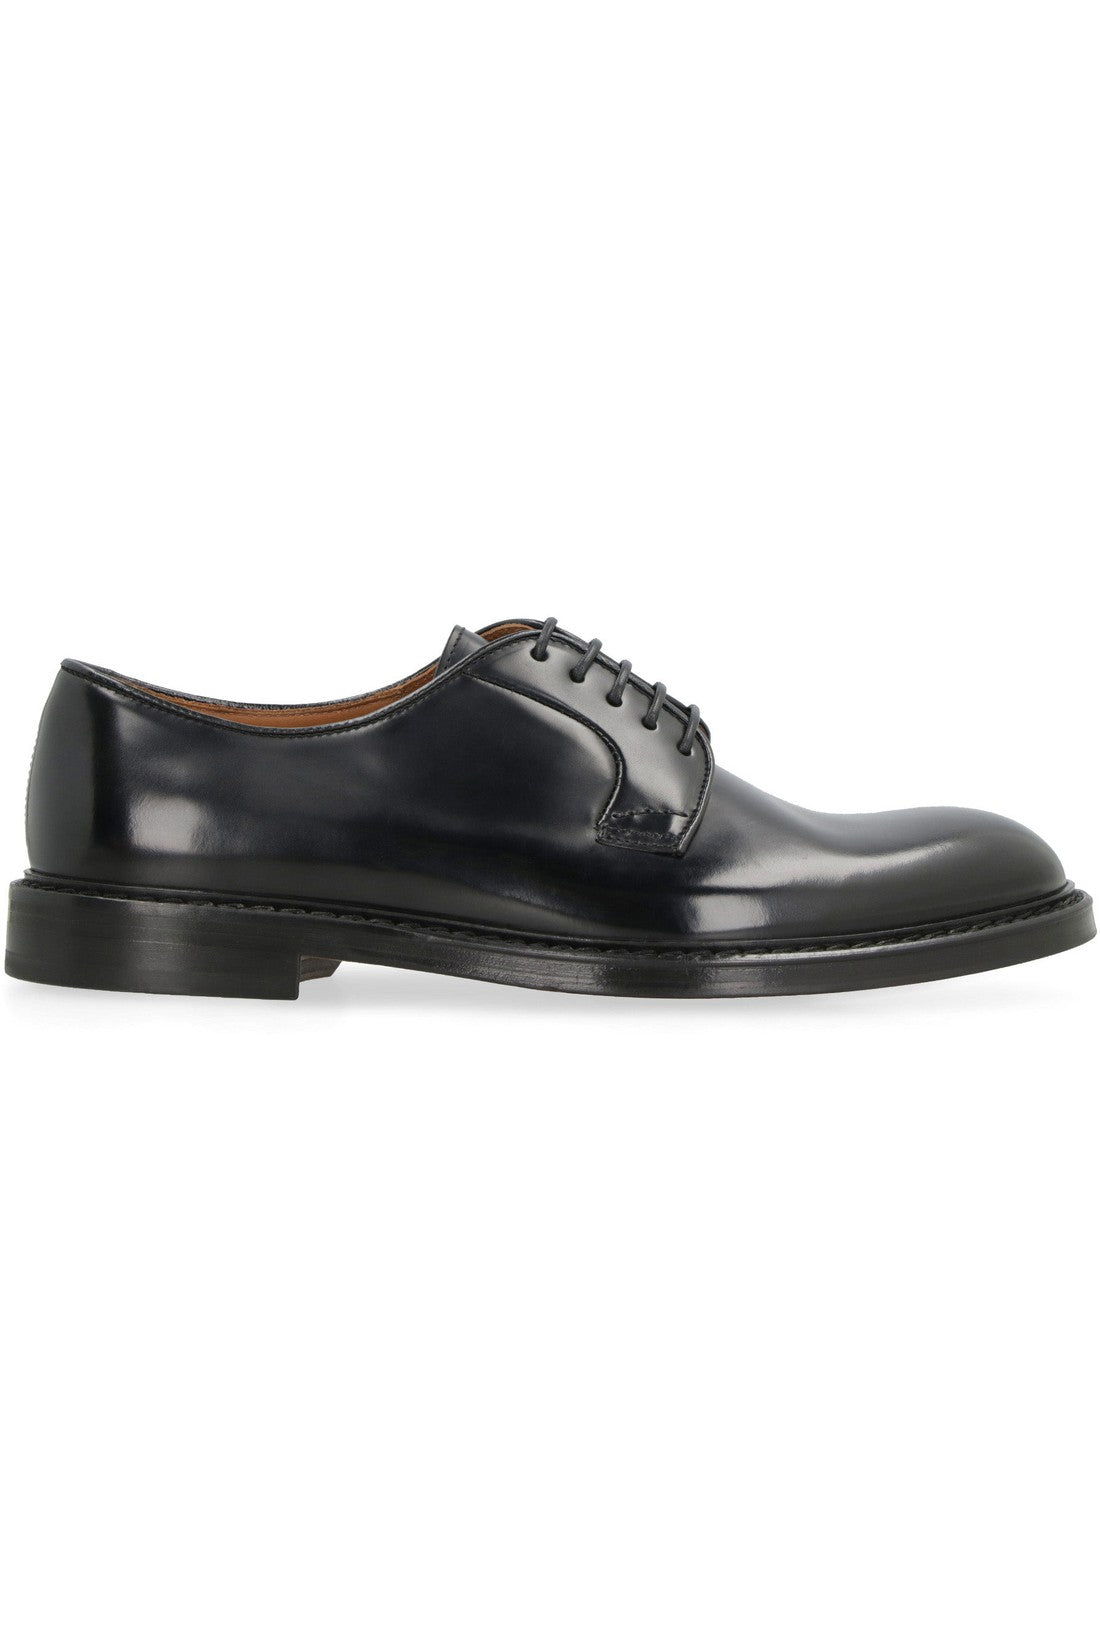 Doucal's-OUTLET-SALE-Leather lace-up shoes-ARCHIVIST